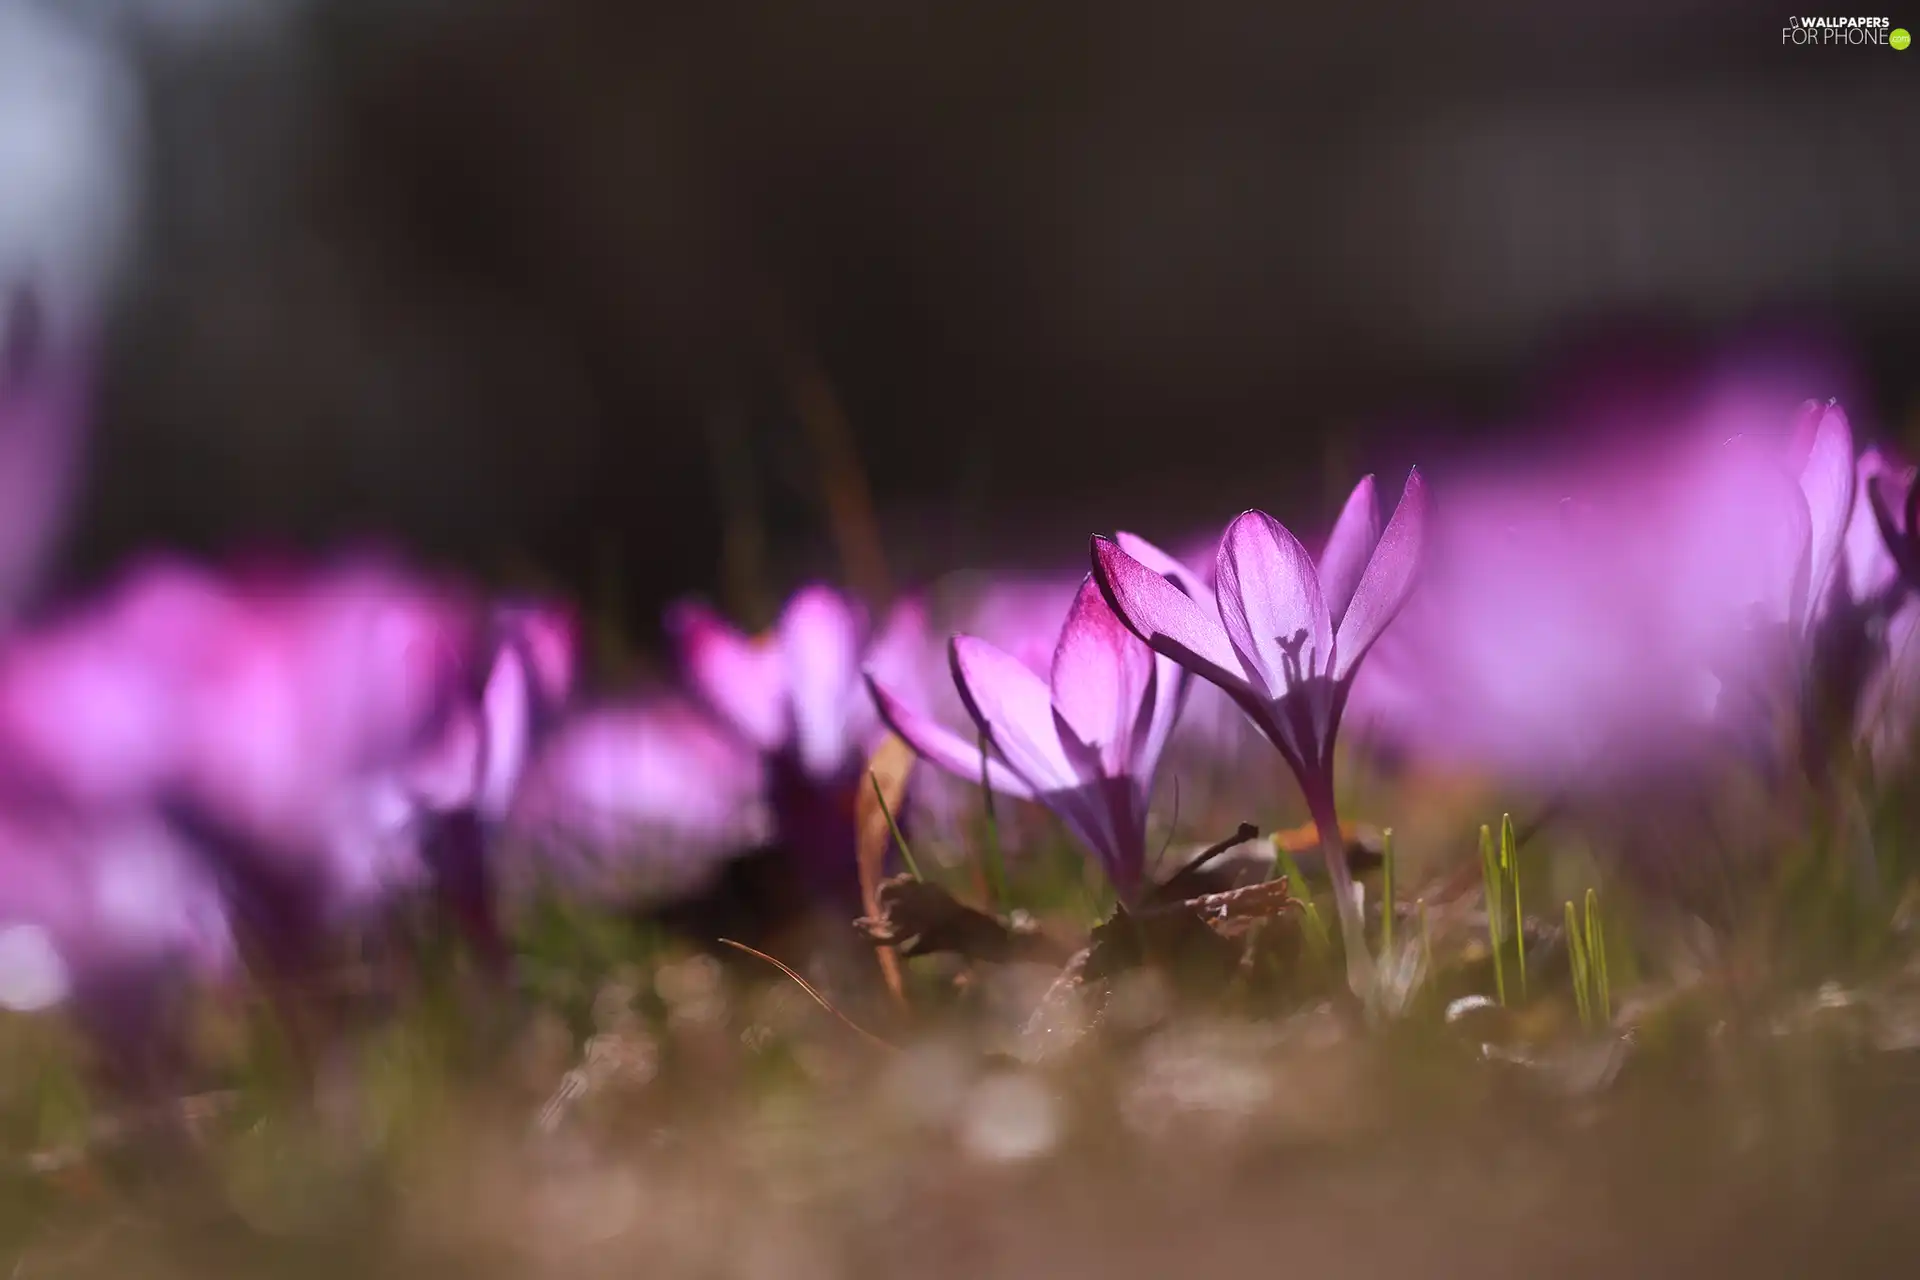 illuminated, Flowers, crocuses, purple